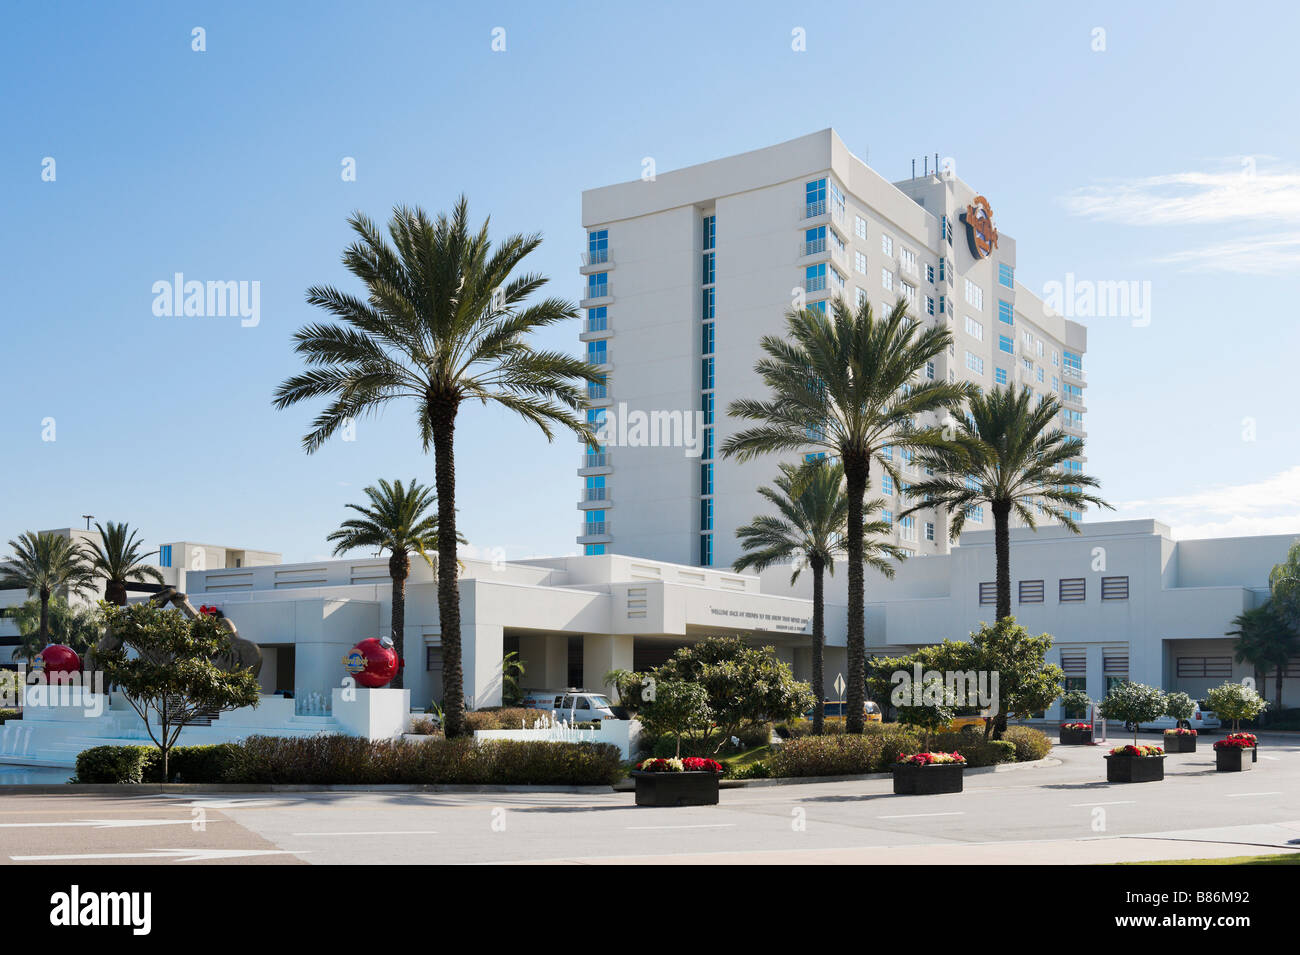 Ingresso al Seminole Hard Rock Hotel e Casino appena fuori a Tampa, Florida, Stati Uniti d'America Foto Stock